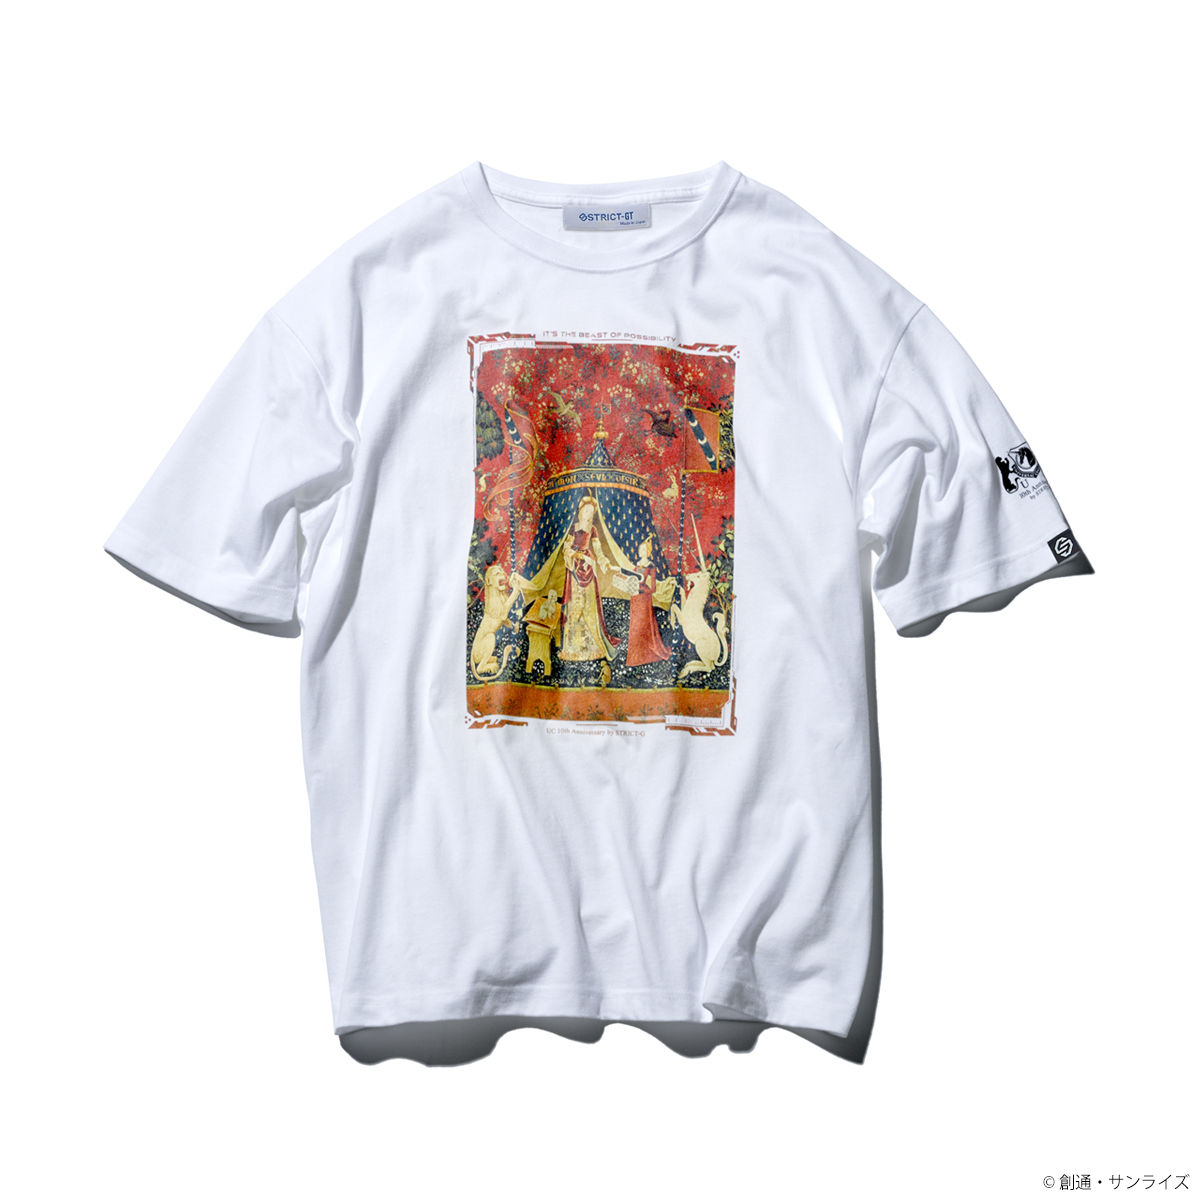 <優惠價>The Lady and the Unicorn T-shirt—Mobile Suit Gundam Unicorn  [Feb 2022 Delivery]